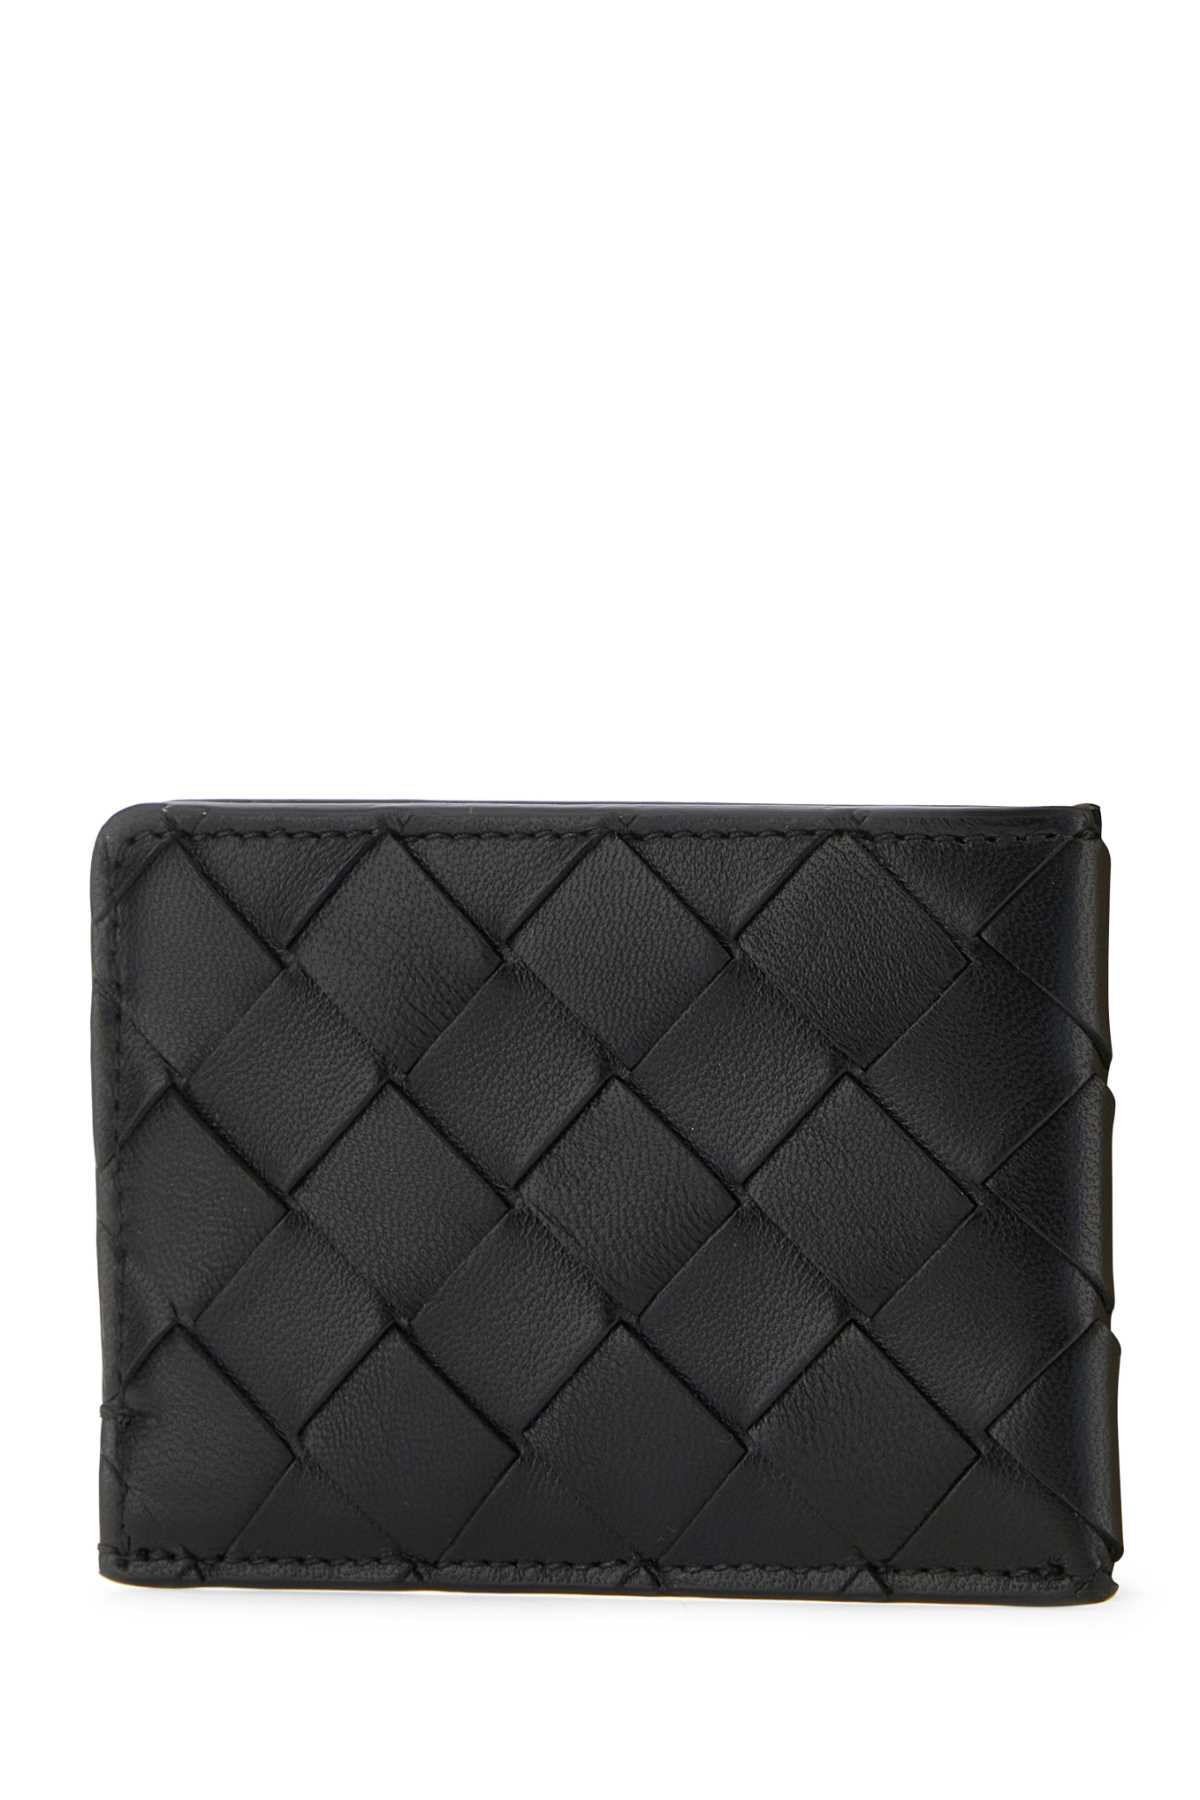 Shop Bottega Veneta Black Leather Cardholder In Blackgold